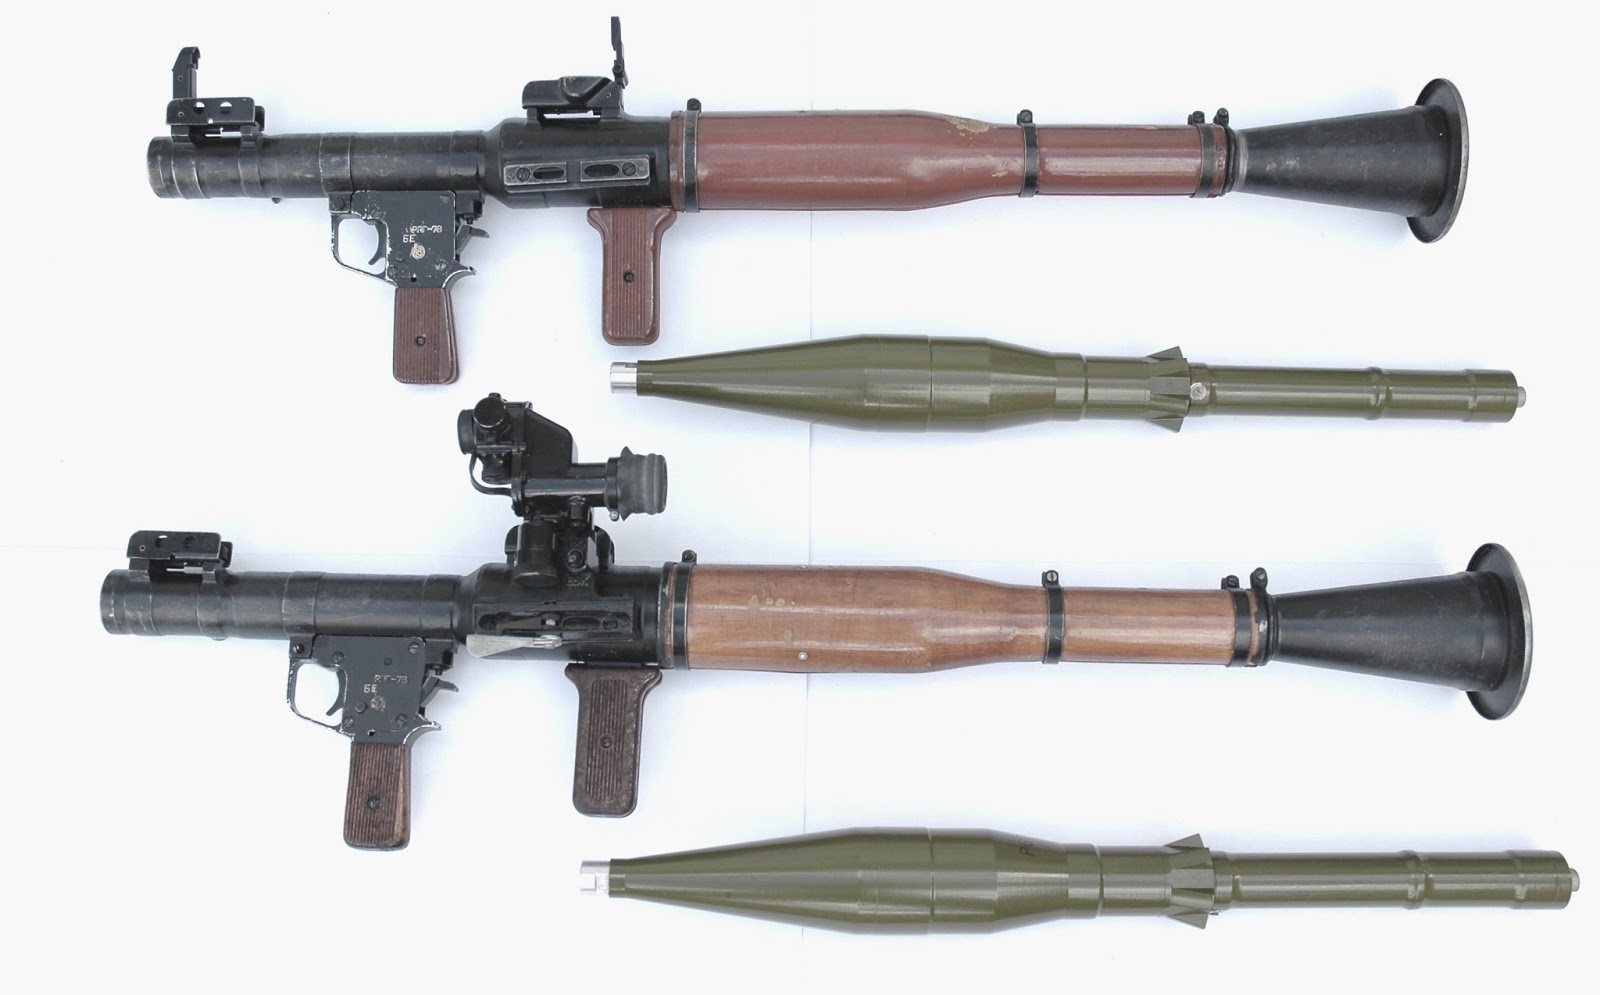 wallpaper launcher,gun,firearm,rifle,trigger,air gun